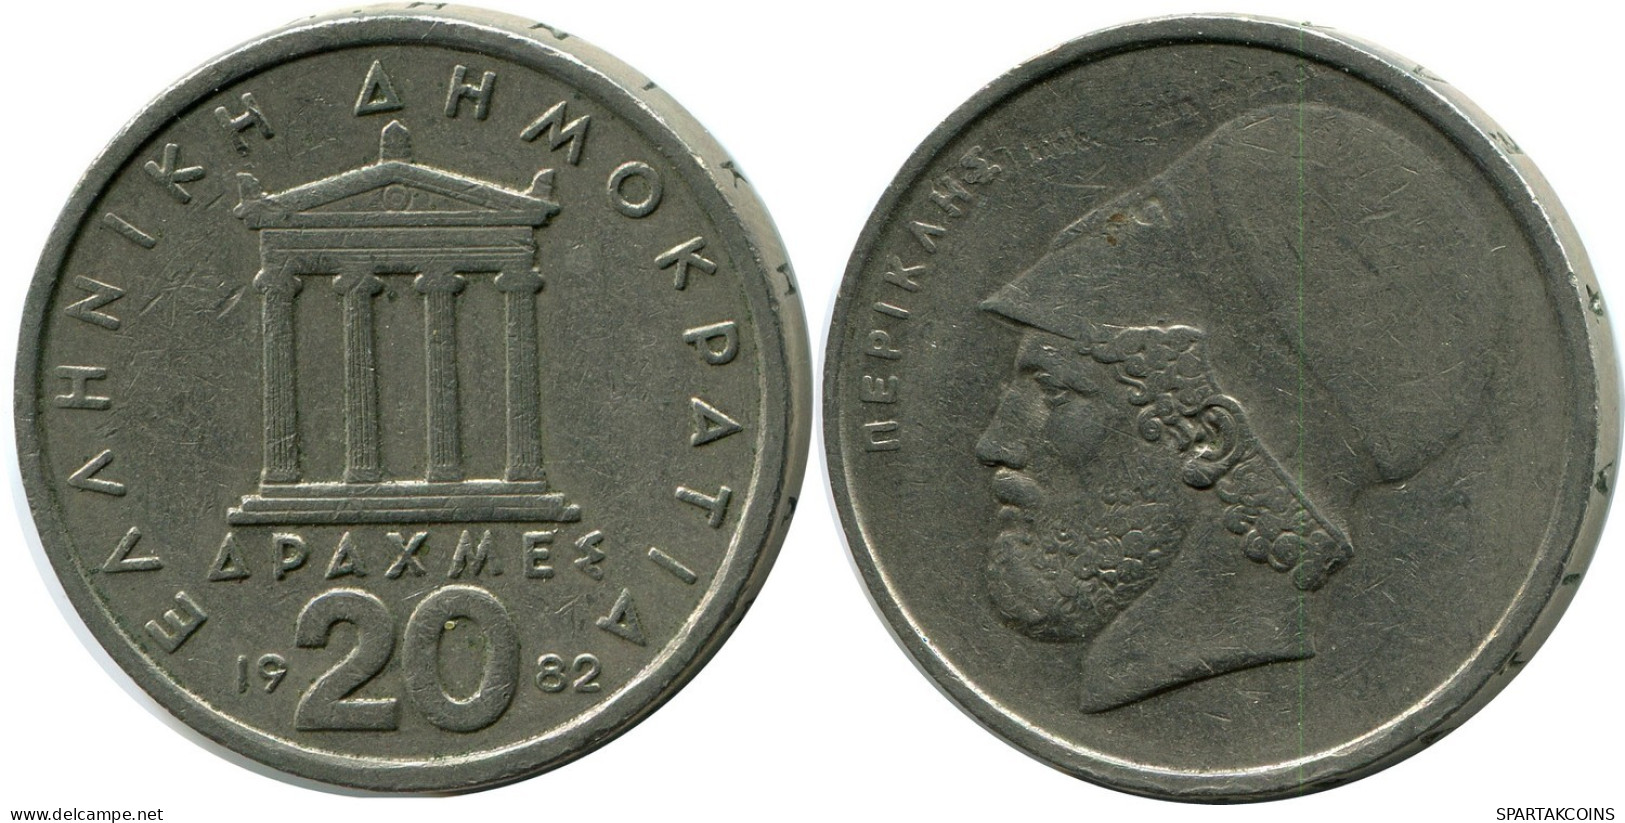 20 DRACHMES 1982 GRECIA GREECE Moneda #AZ324.E.A - Grèce